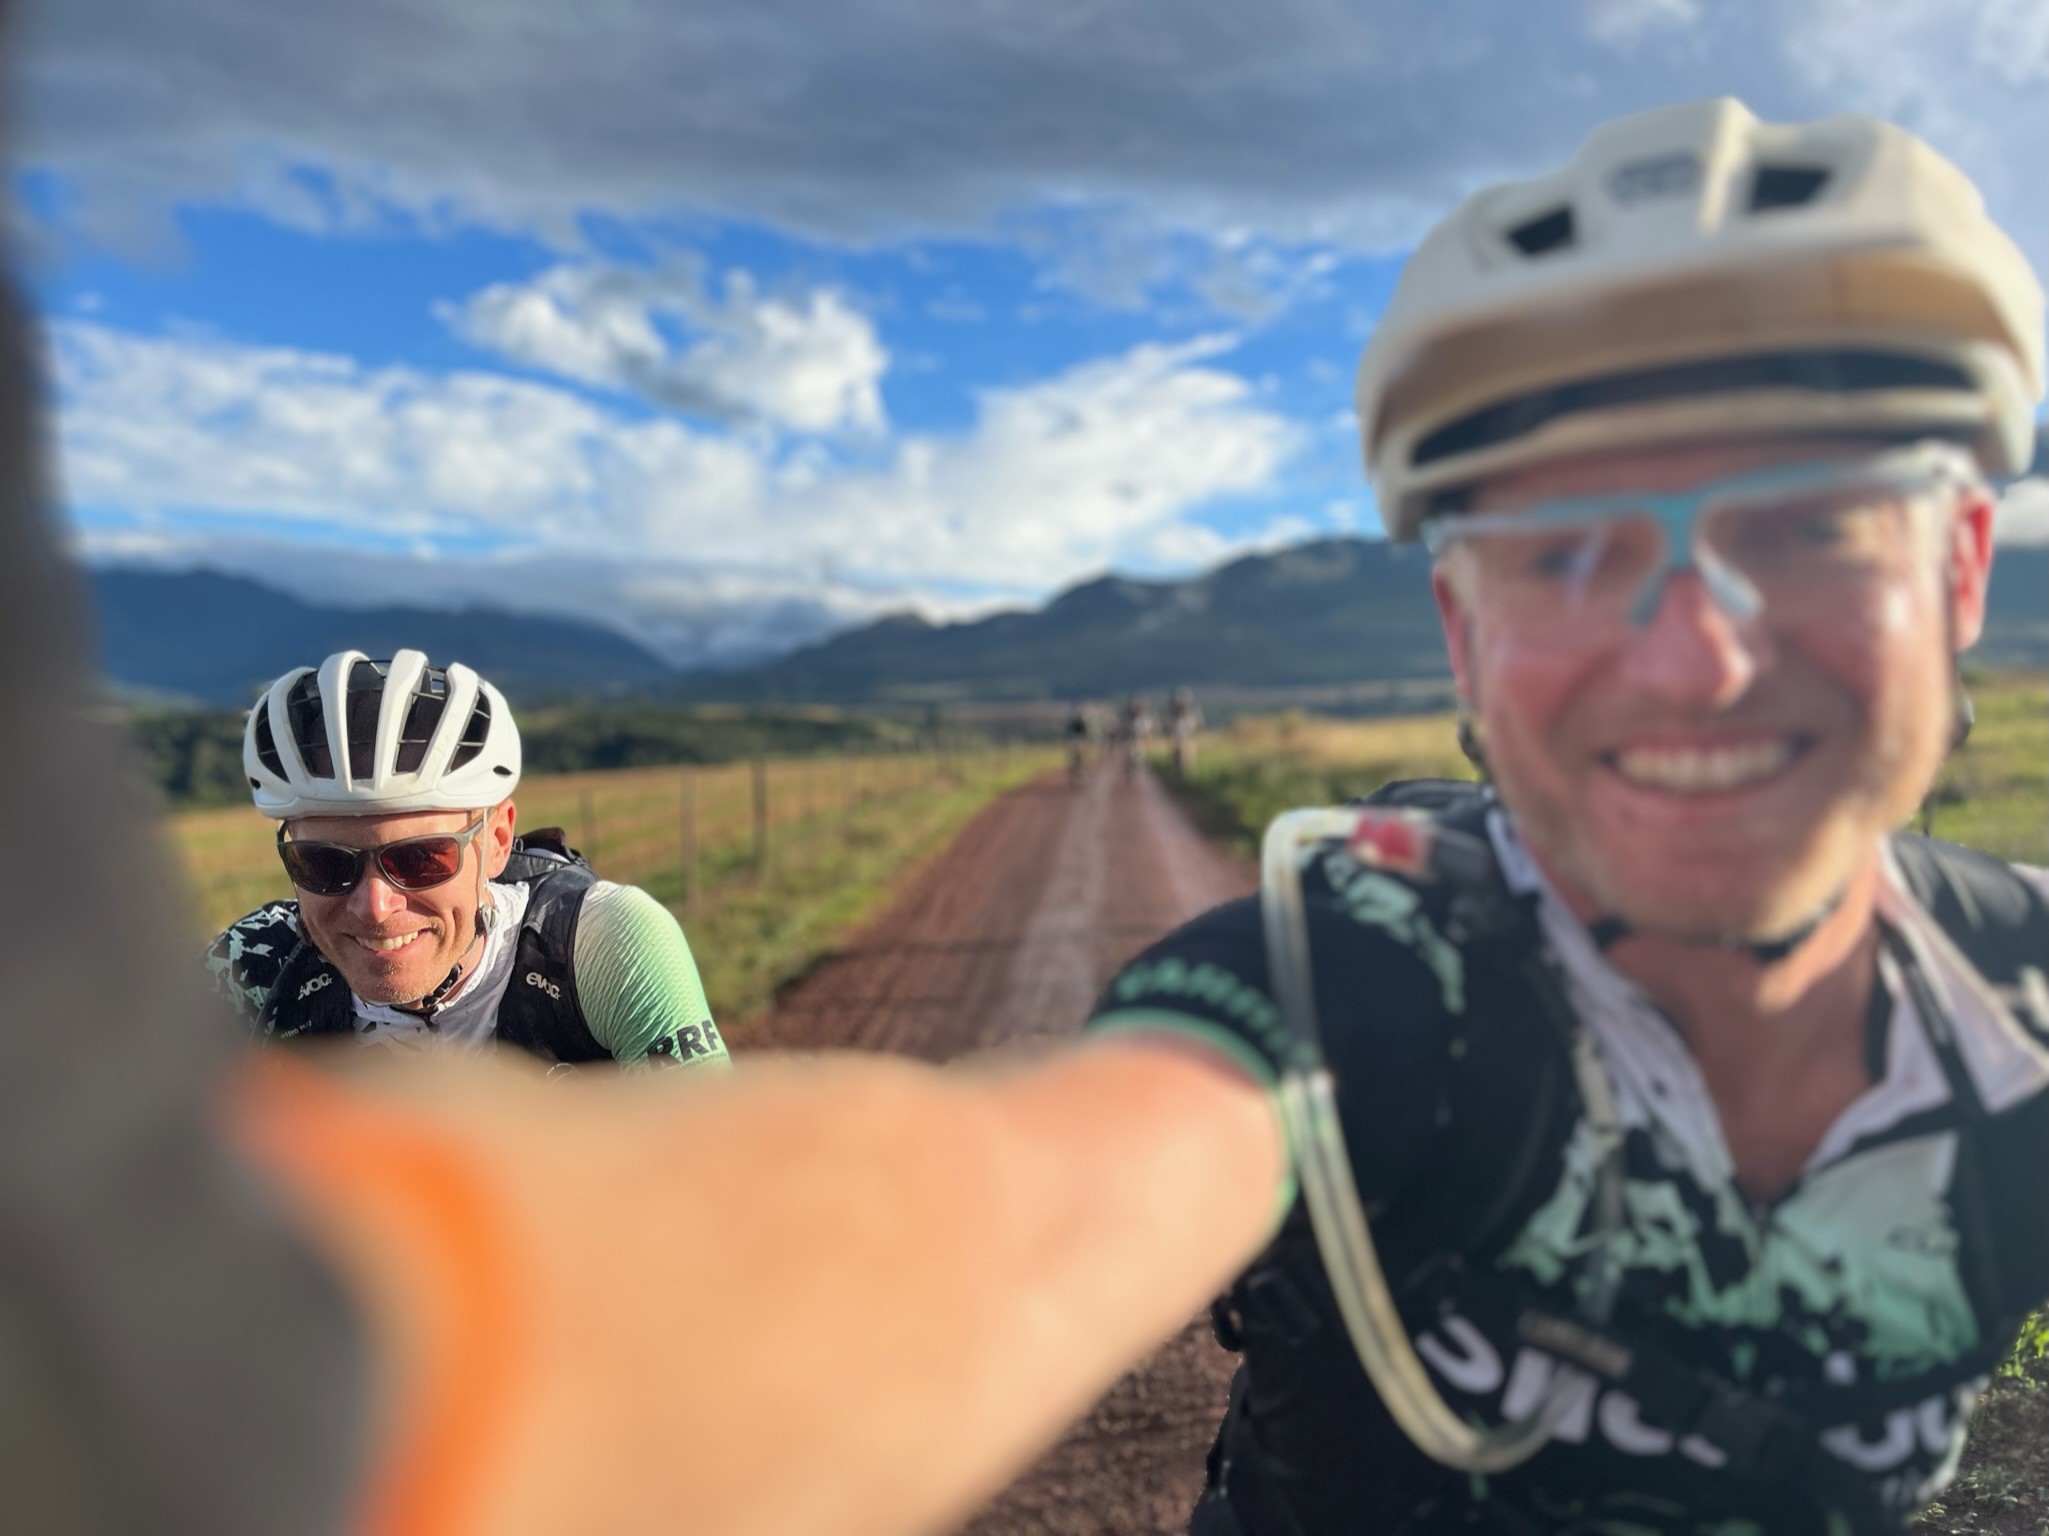 Benedikt Smit (Startnummer 340-1) und sein Kumpel Dominik Behle (340-2) haben im März zum dritten Mal am Cape Epic in Südafrika teilgenommen. Es gilt als das härteste Mountainbike-Rennen der Welt. von privat